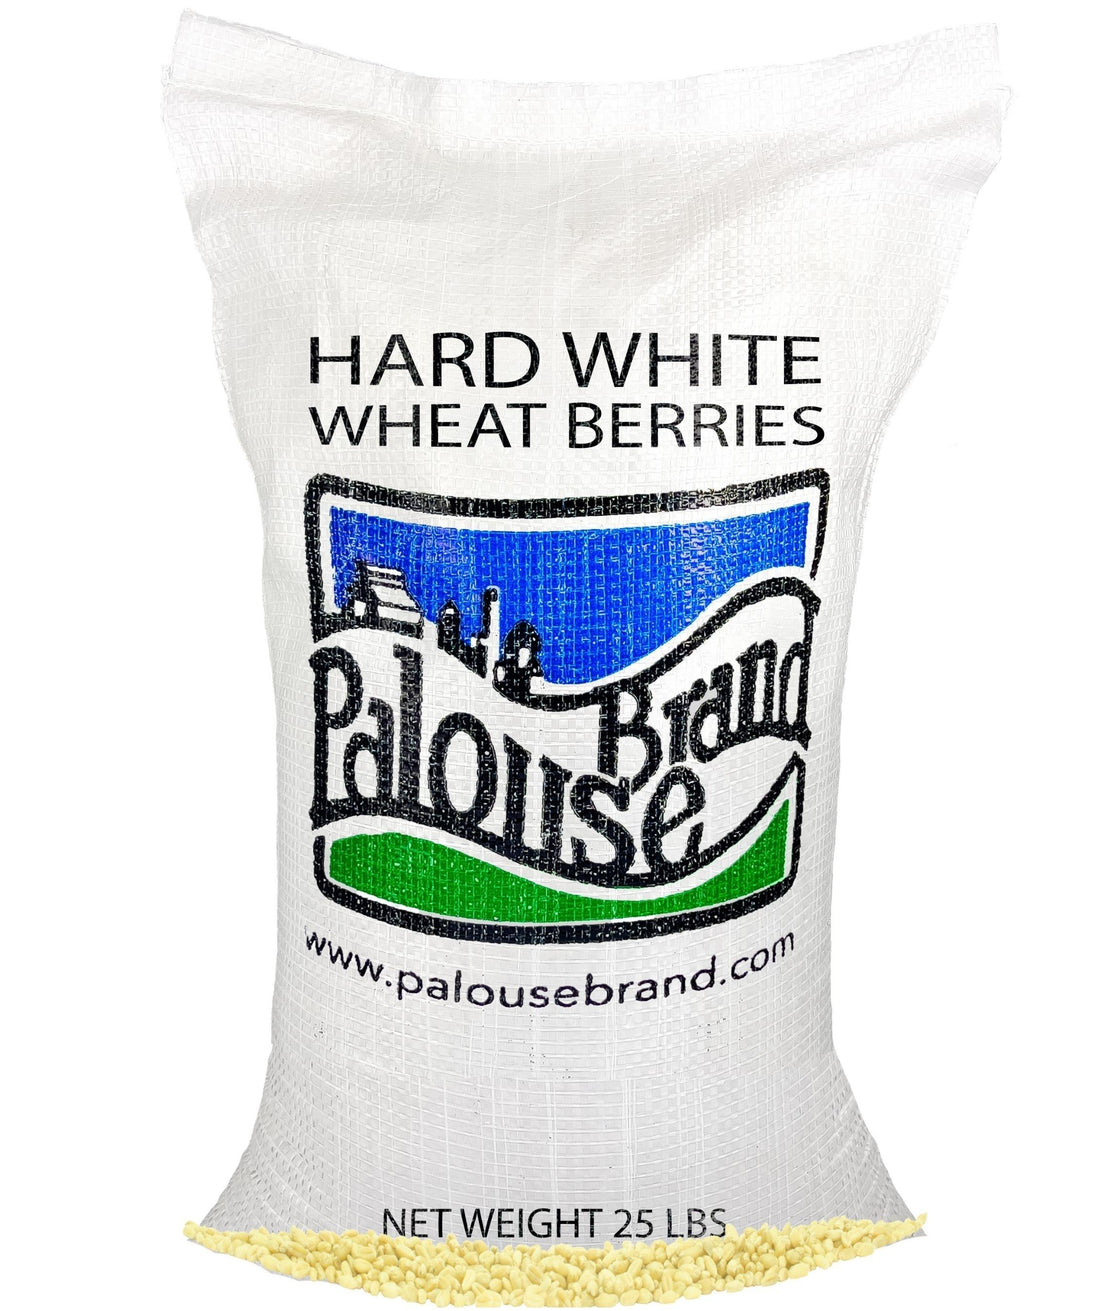 Palouse Brand Hard White Wheat Berries,  25 pound,  non-GMO wheat berries,  Washington Grown